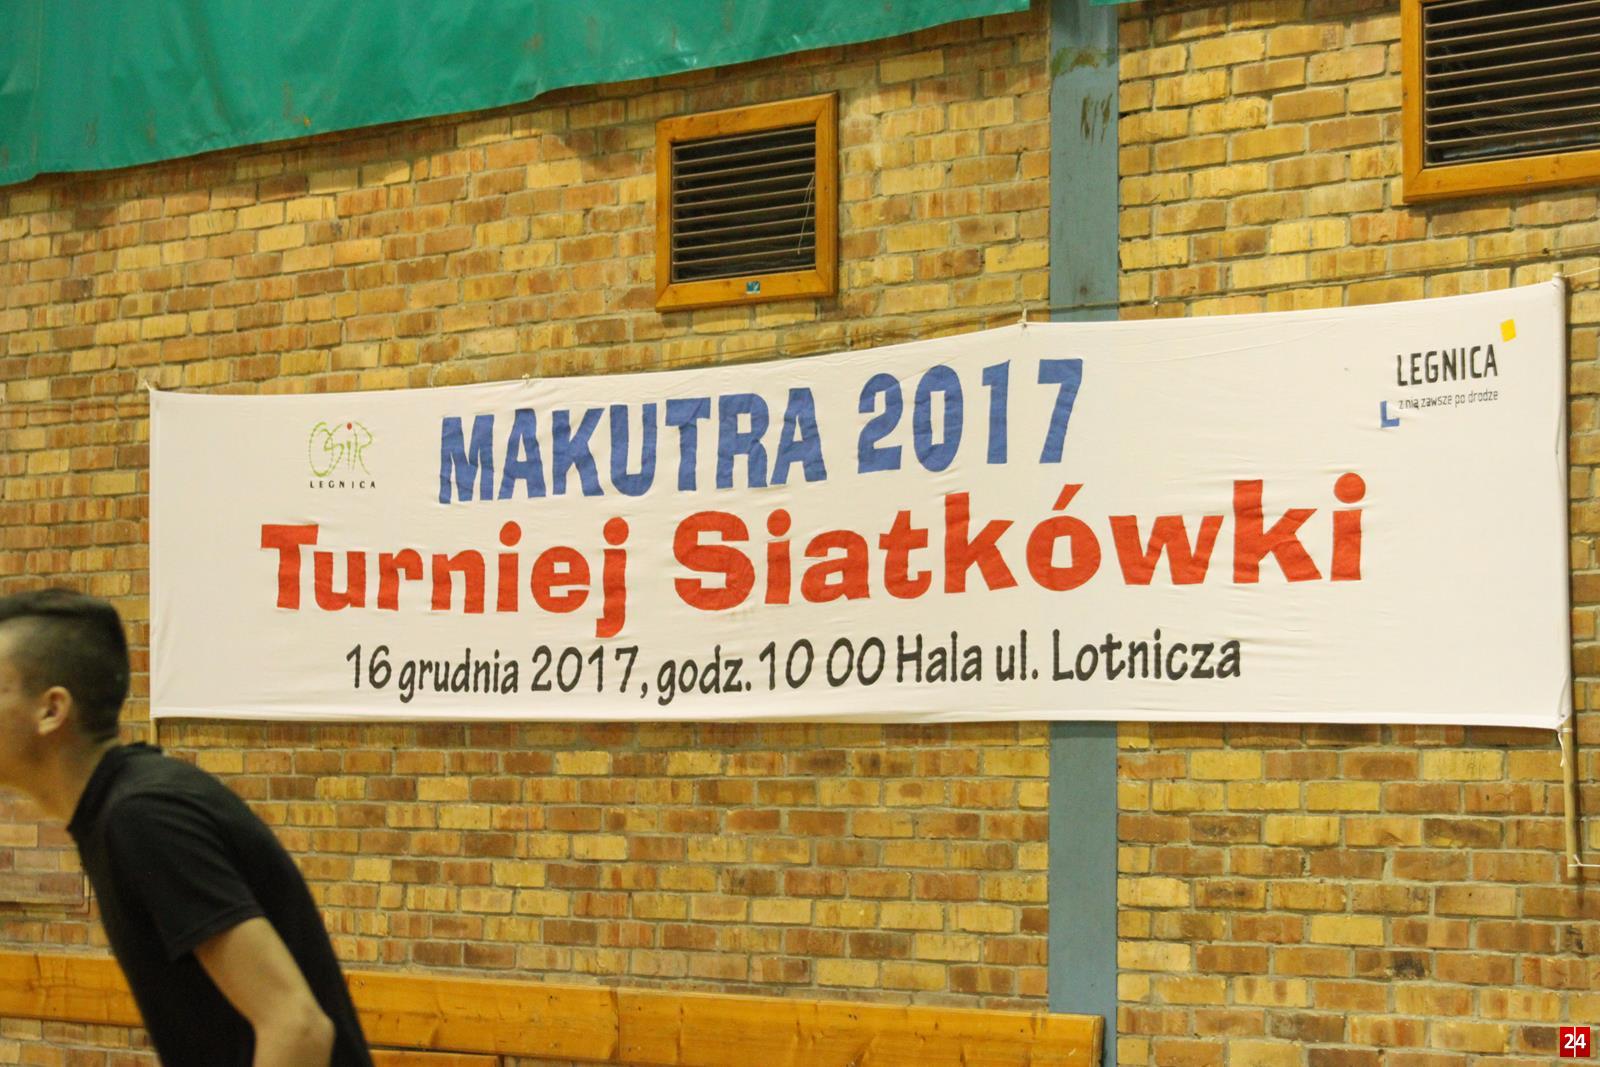 (FOTO) Za nami Turniej Siatkówki Makutra 2017!